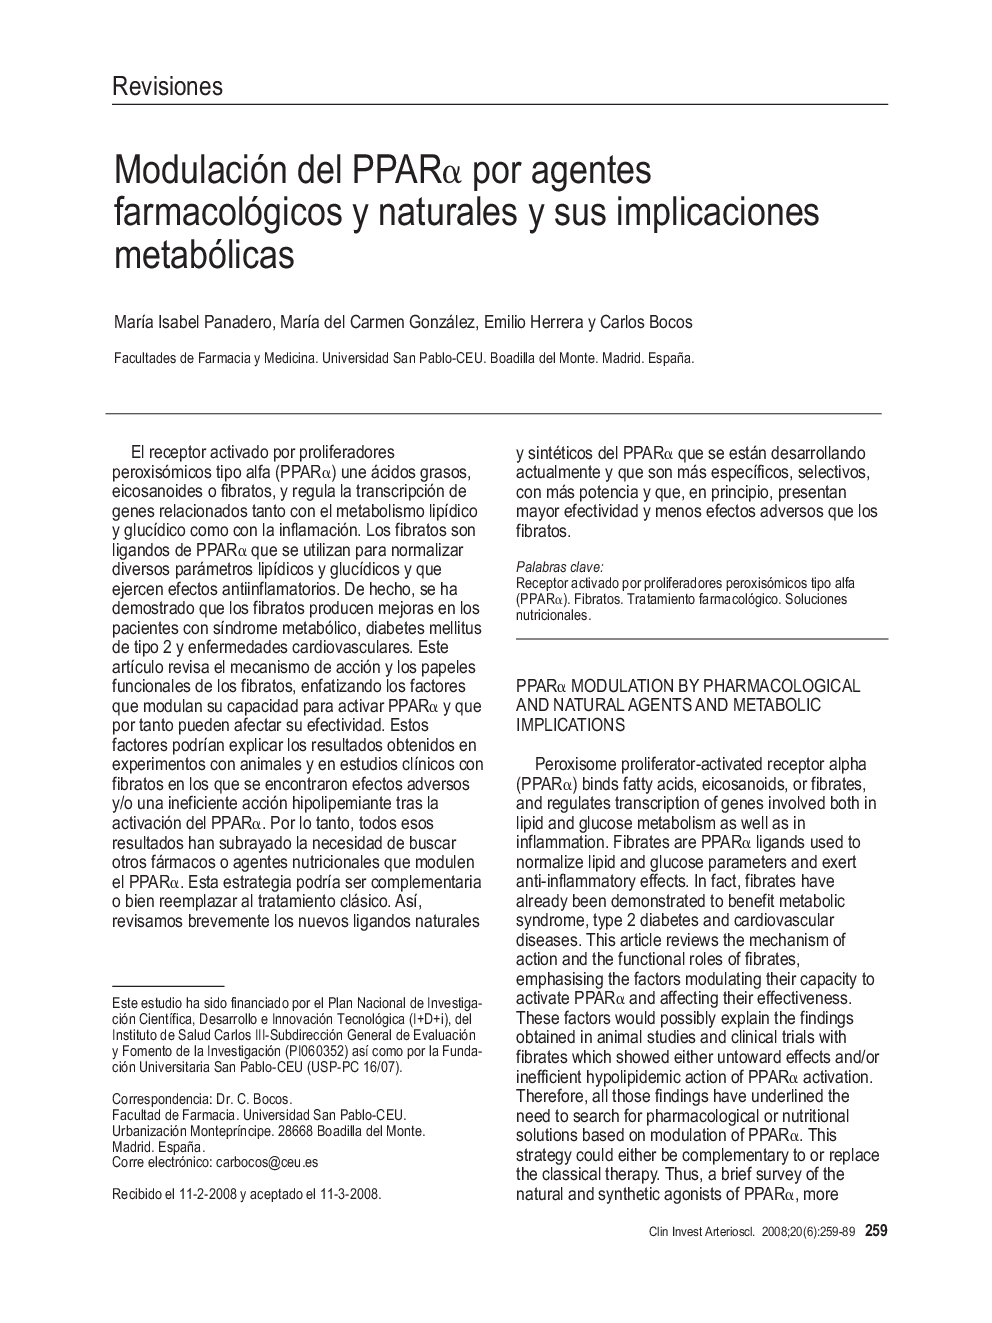 Modulación del PPARÎ± por agentes farmacológicos y naturales y sus implicaciones metabólicas